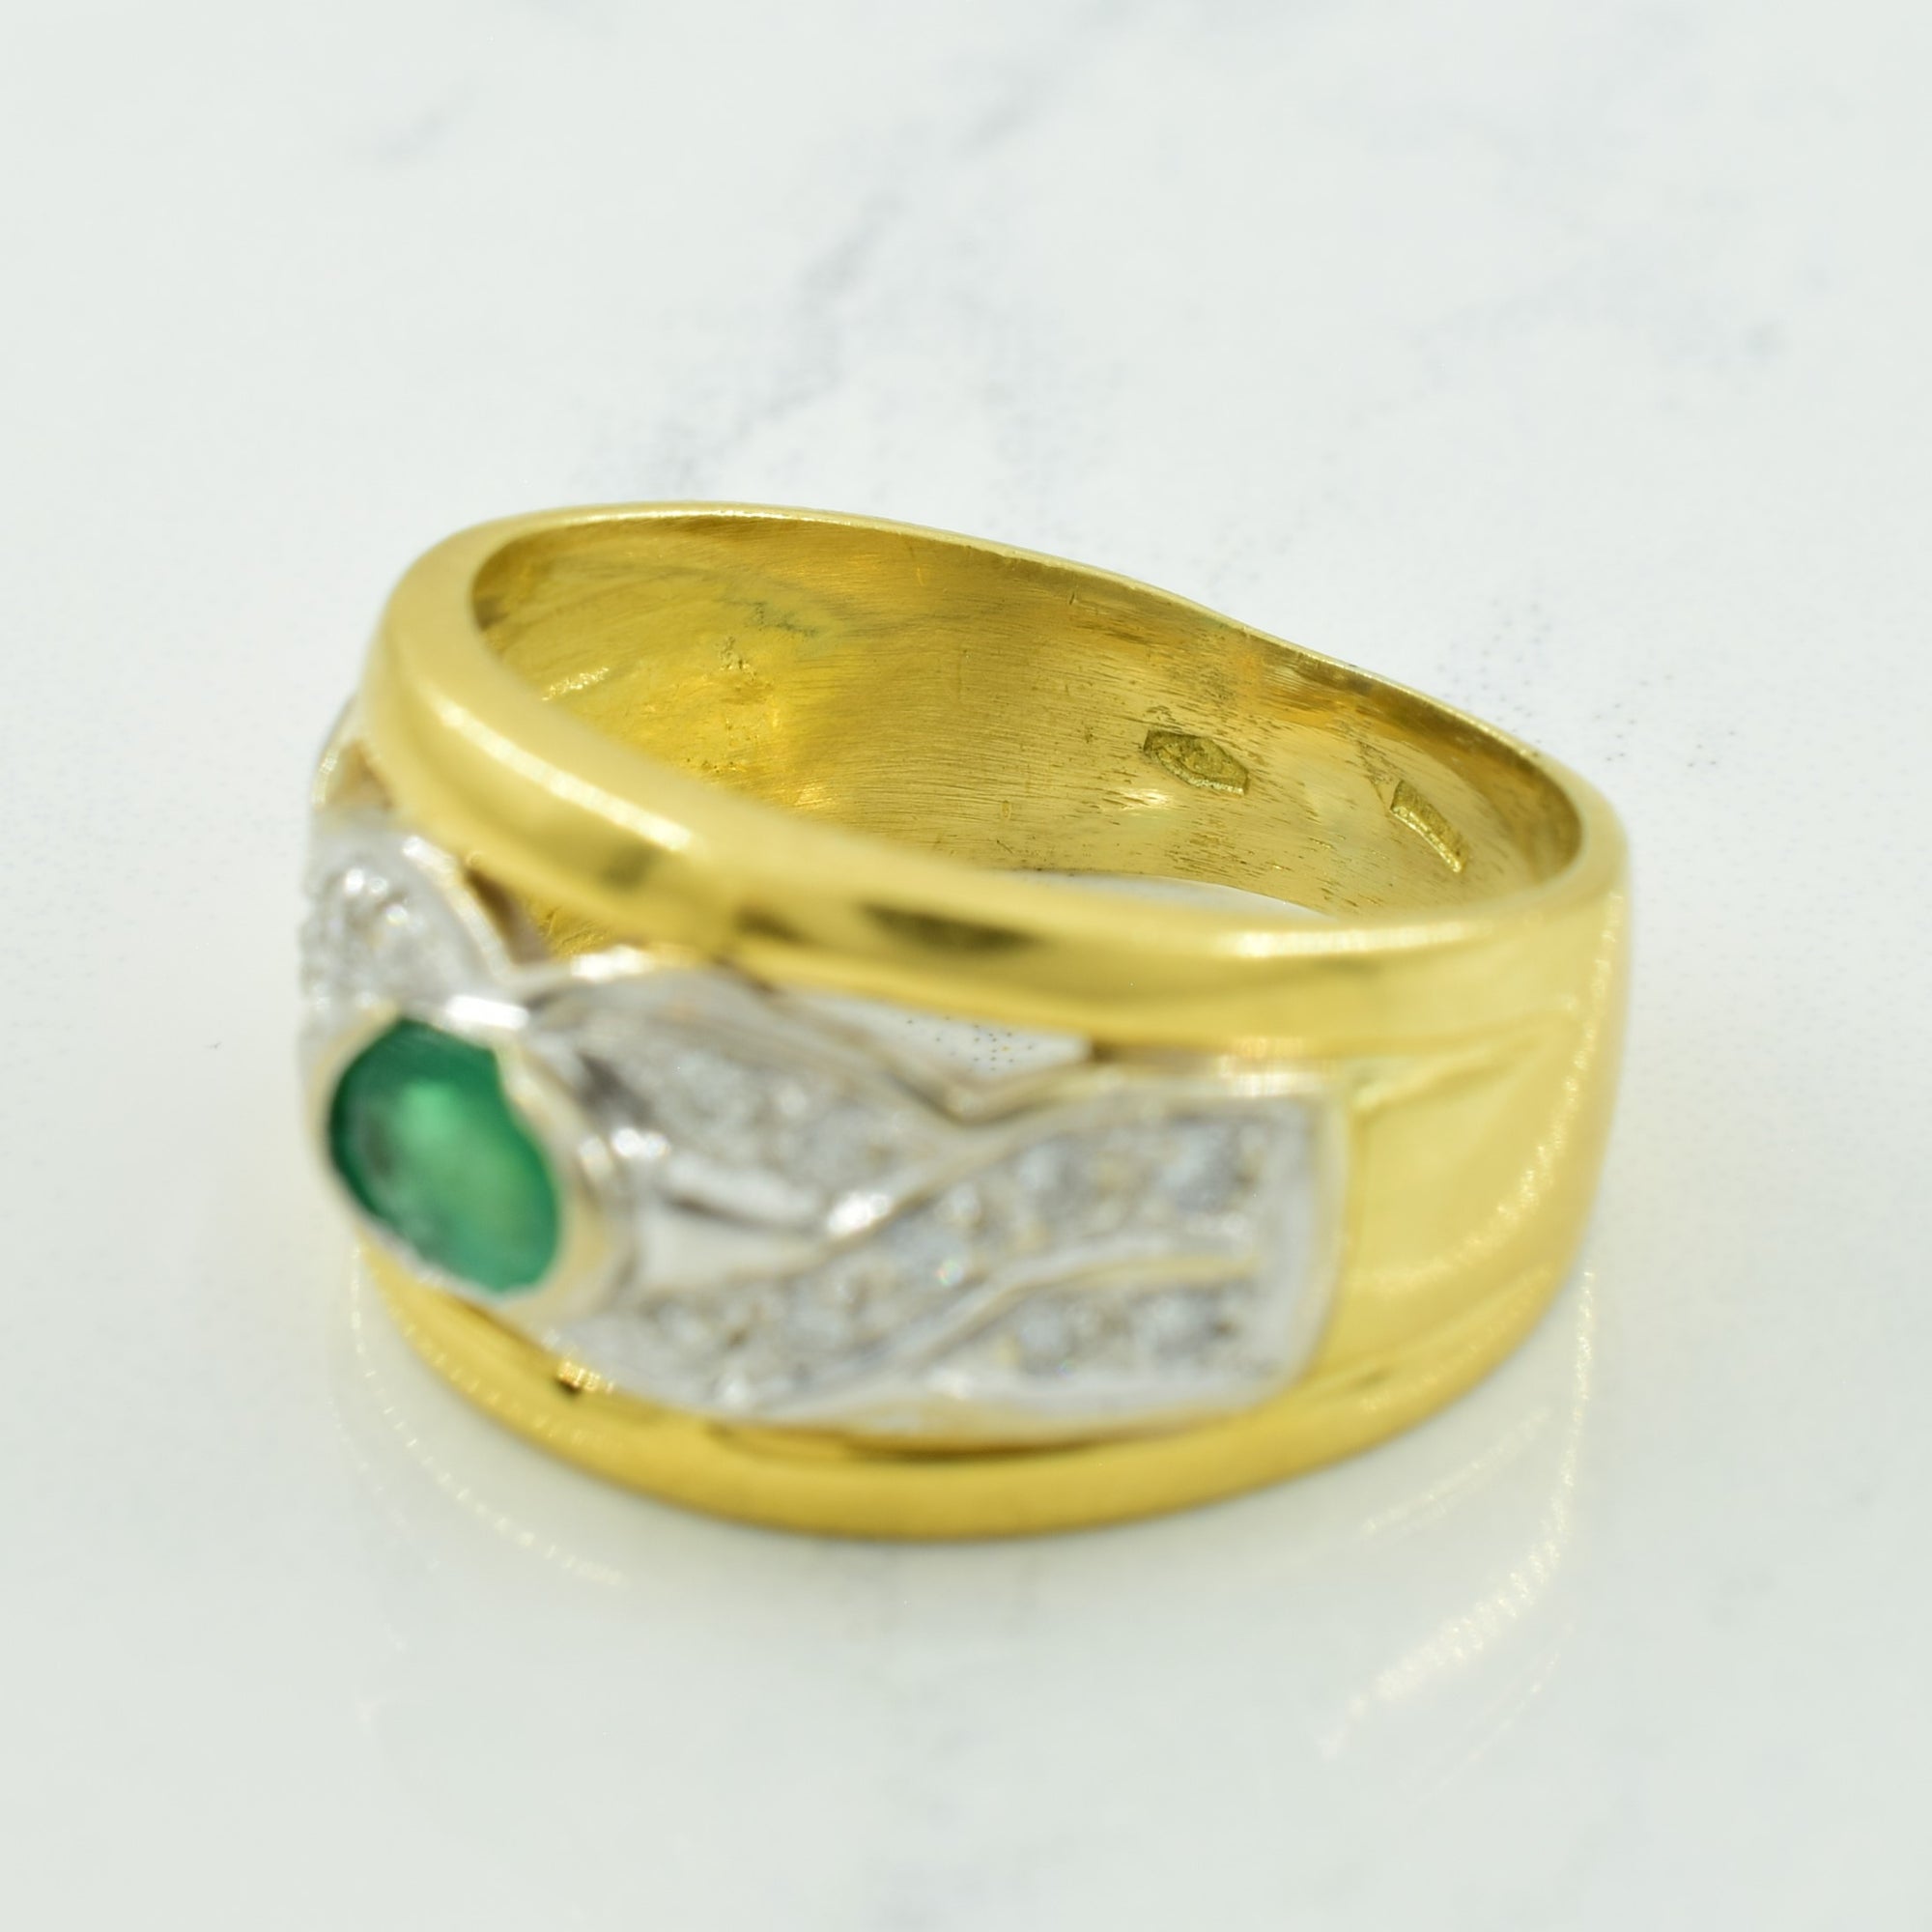 Emerald & Diamond Ring | 0.32ct, 0.18ctw | SZ 6 |